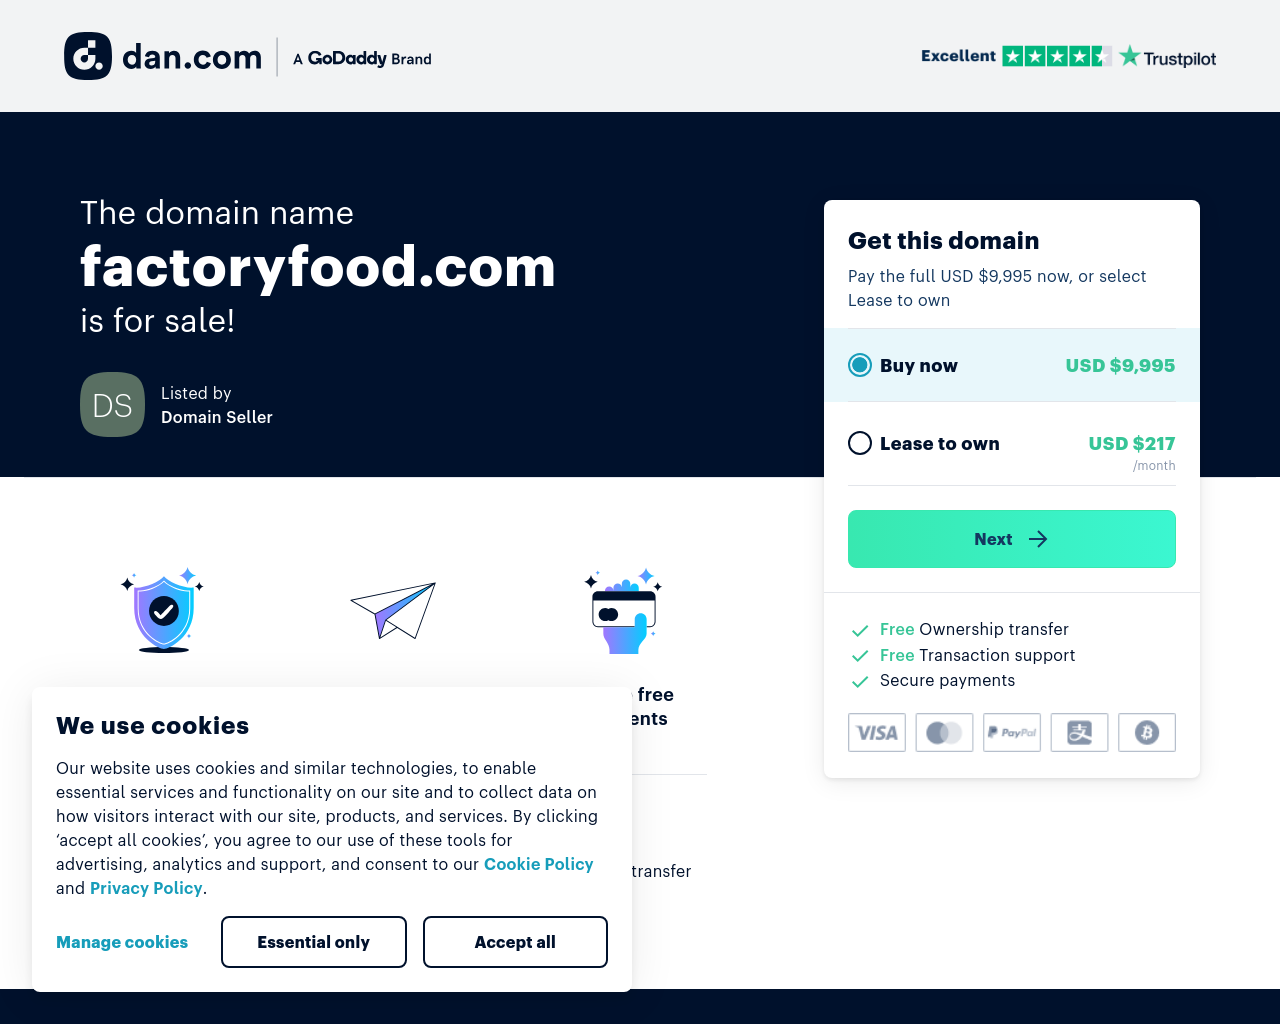 factoryfood.com